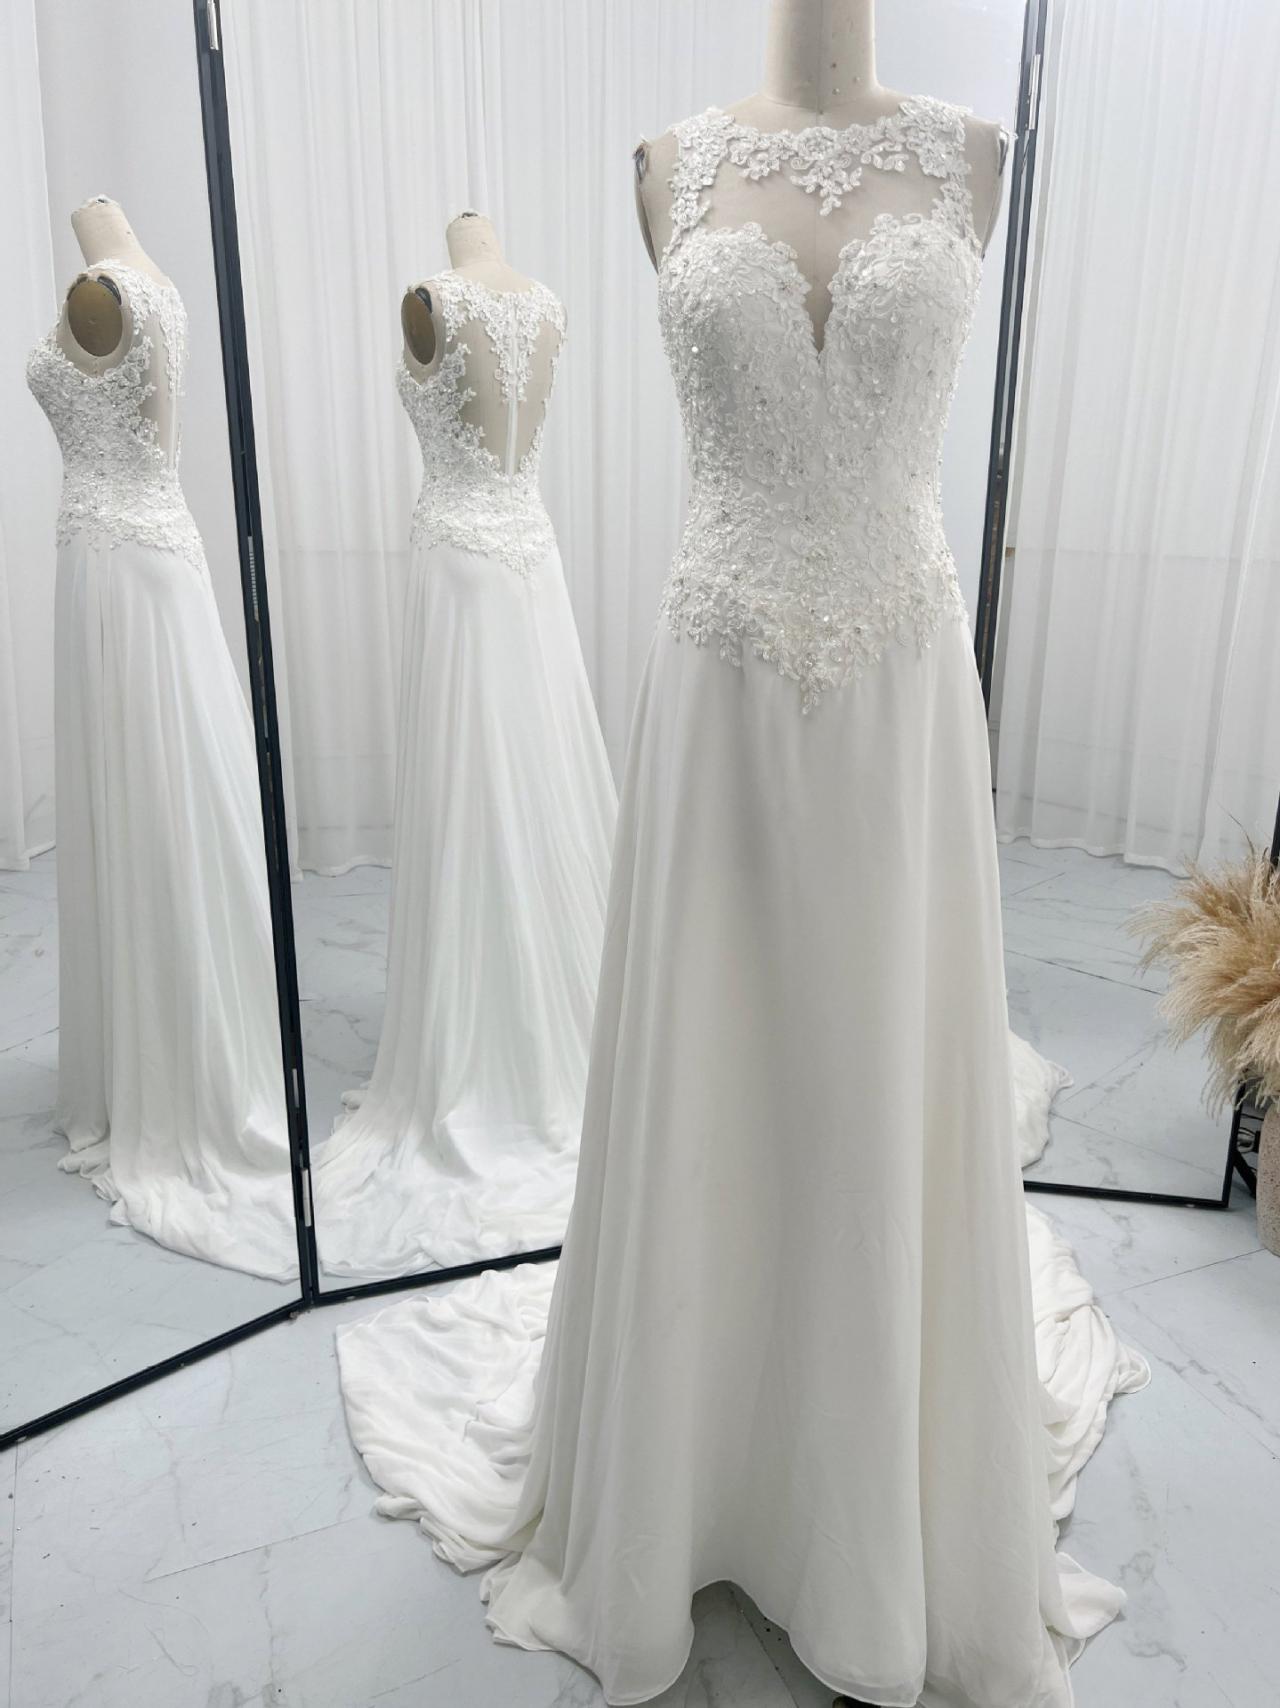 Illusion Neck Ivory Wedding Dress